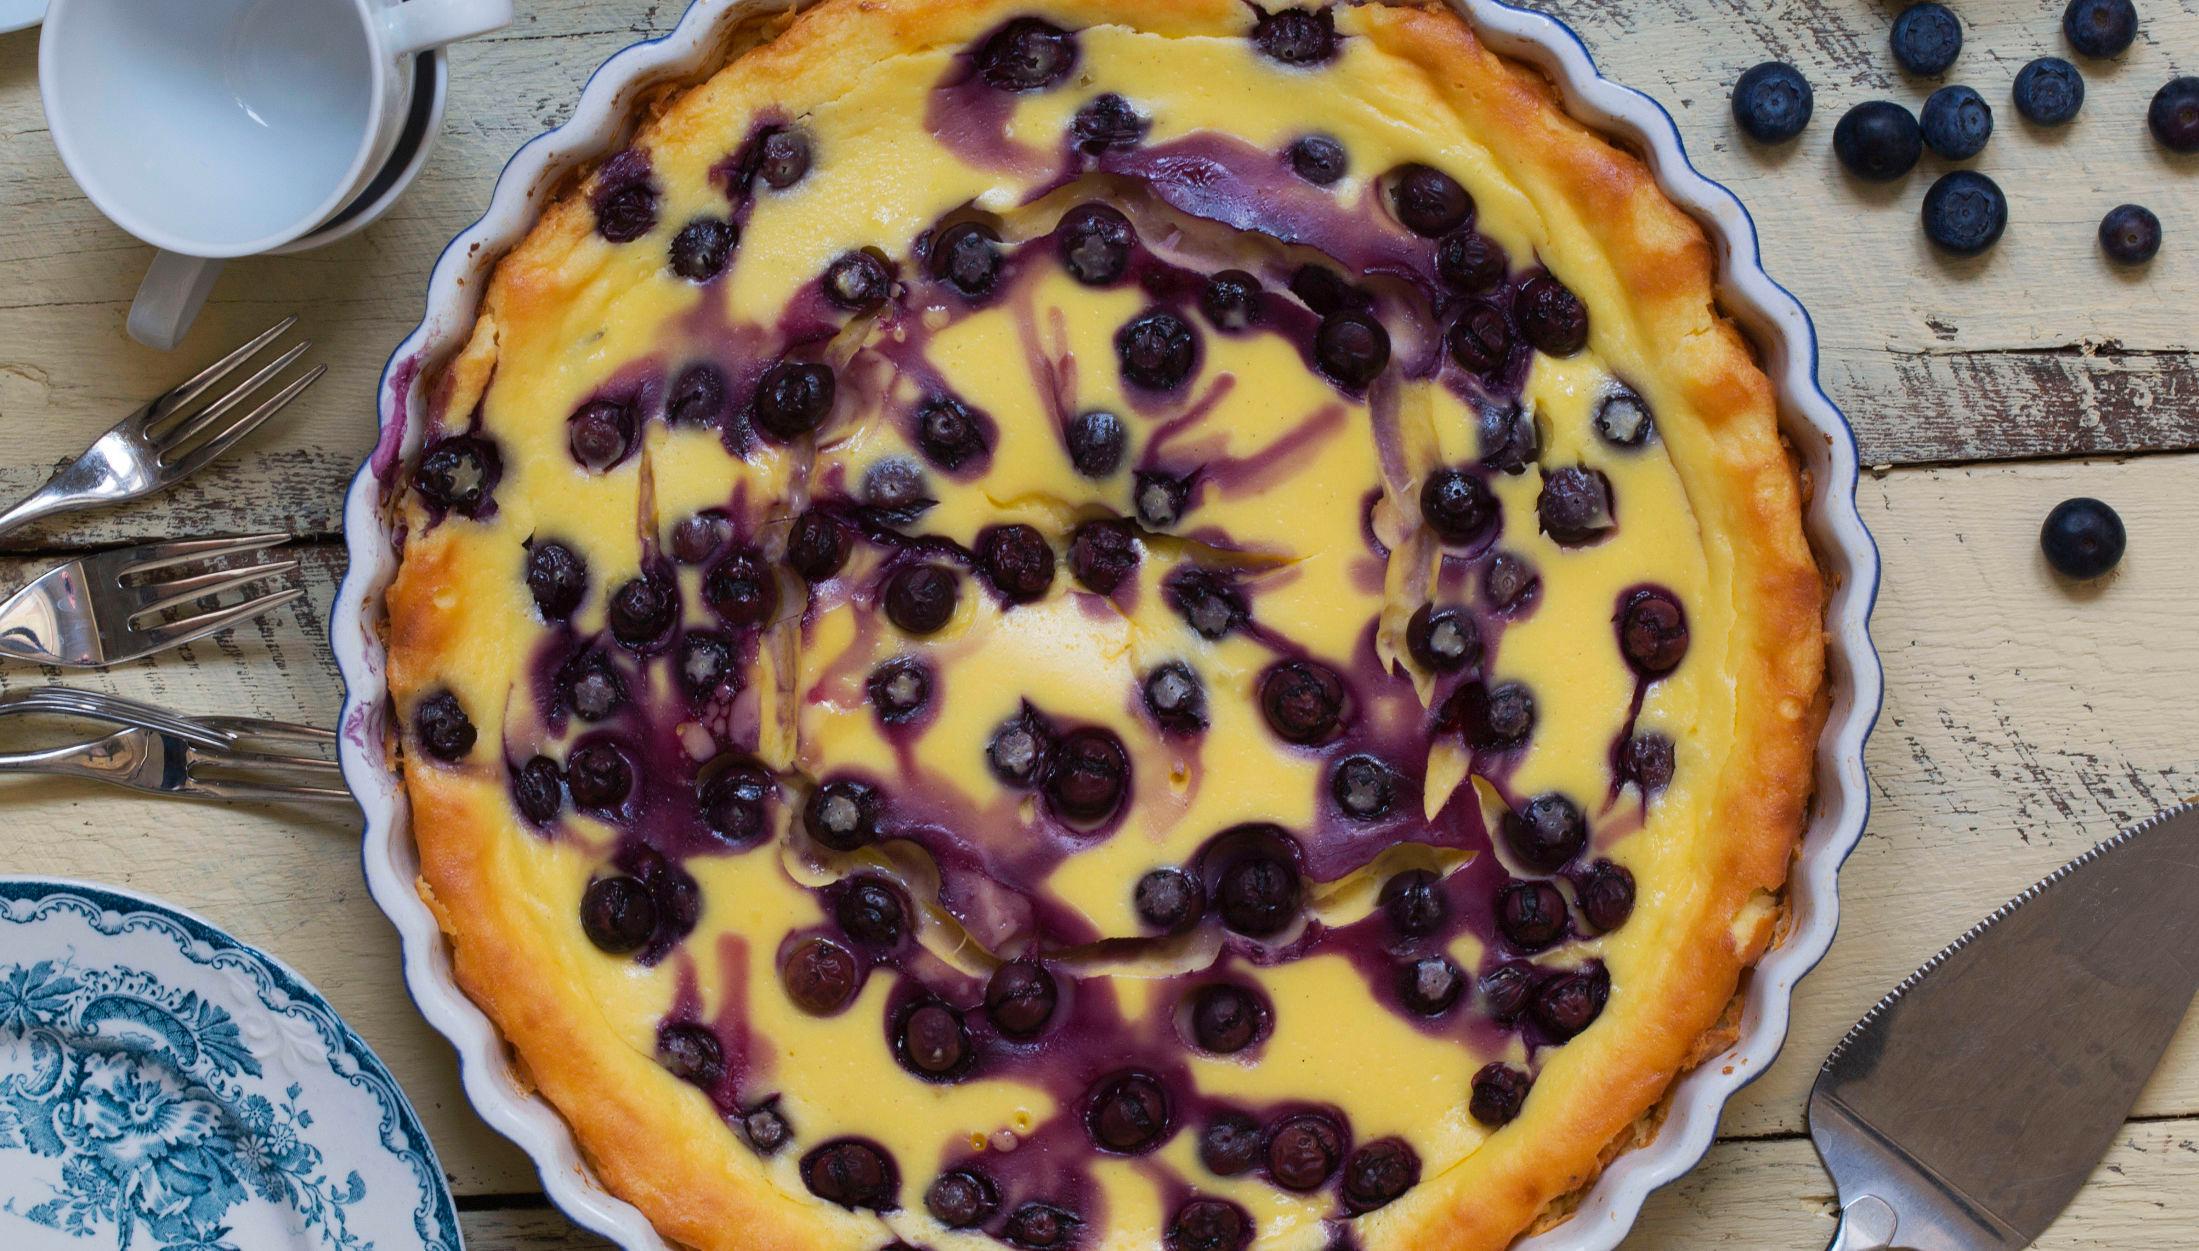 HØSTGODT: En superenkel, ovnsbakt ostekake er en av de beste måtene å servere høstens blåbær på - kaken er like god med plommer og epler også. Foto: Aicha Bouhlou.